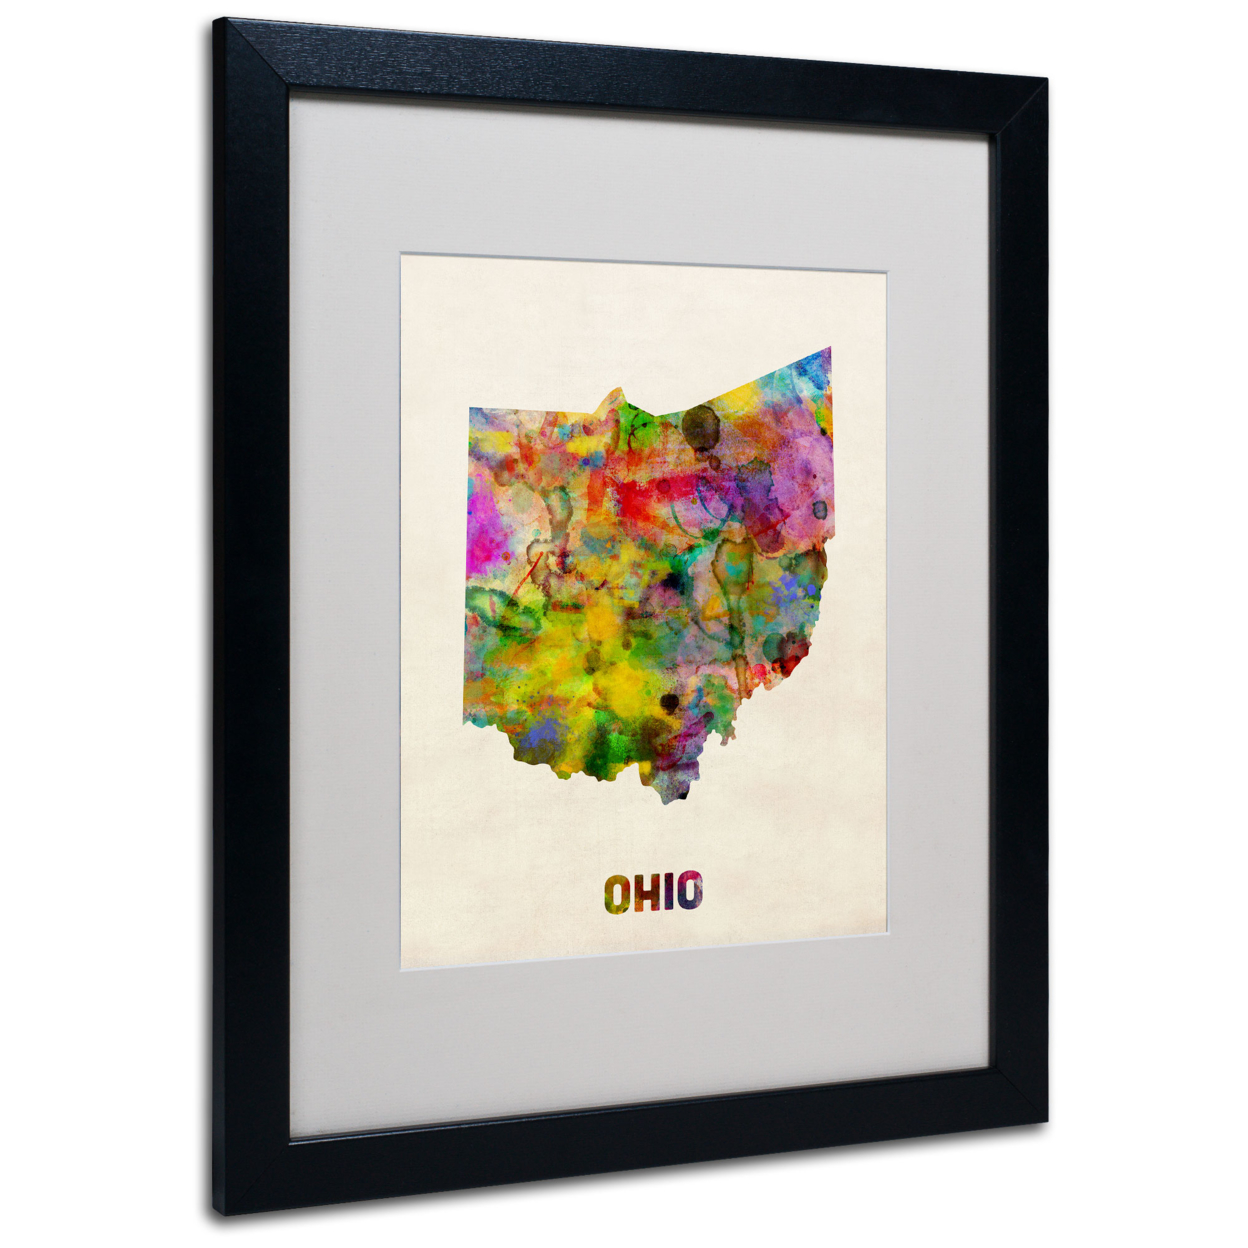 Michael Tompsett 'Ohio Map' Black Wooden Framed Art 18 X 22 Inches